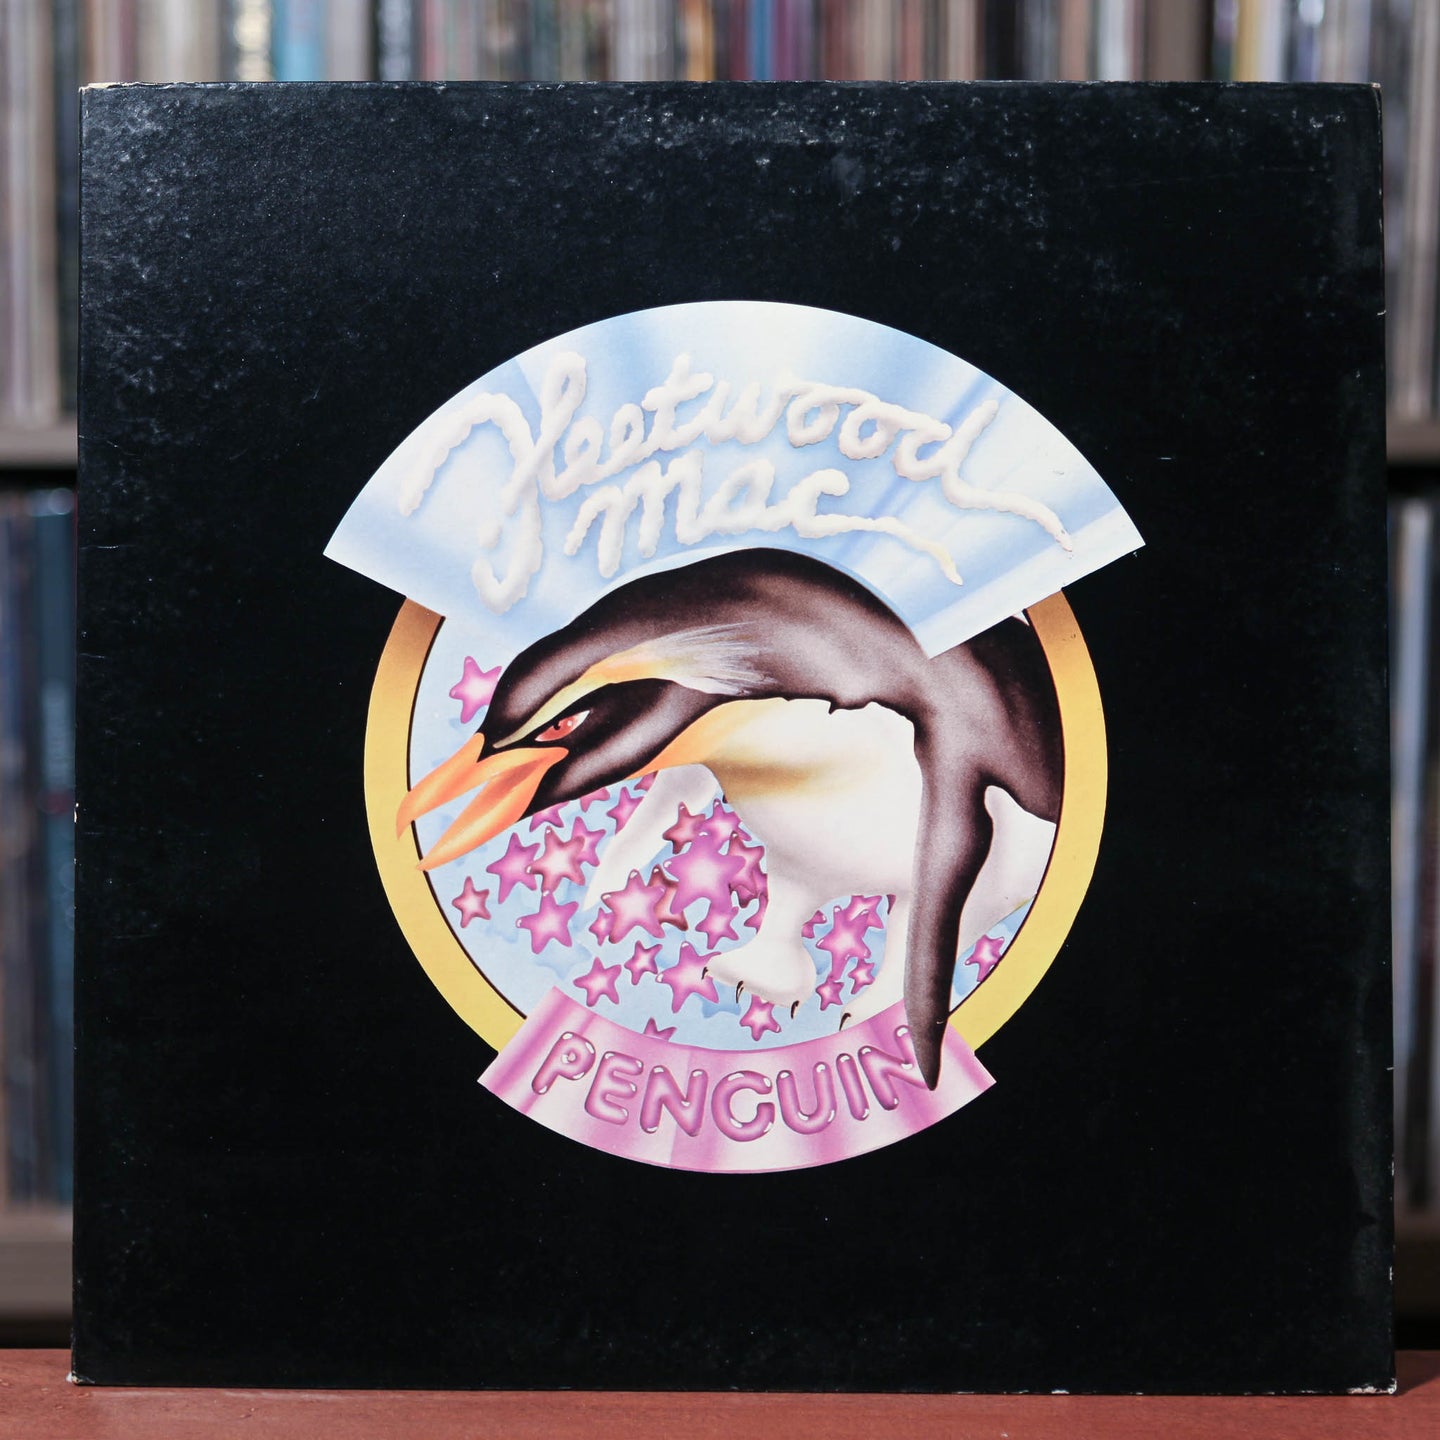 Fleetwood Mac - Penguin - 1973 Reprise, EX/EX